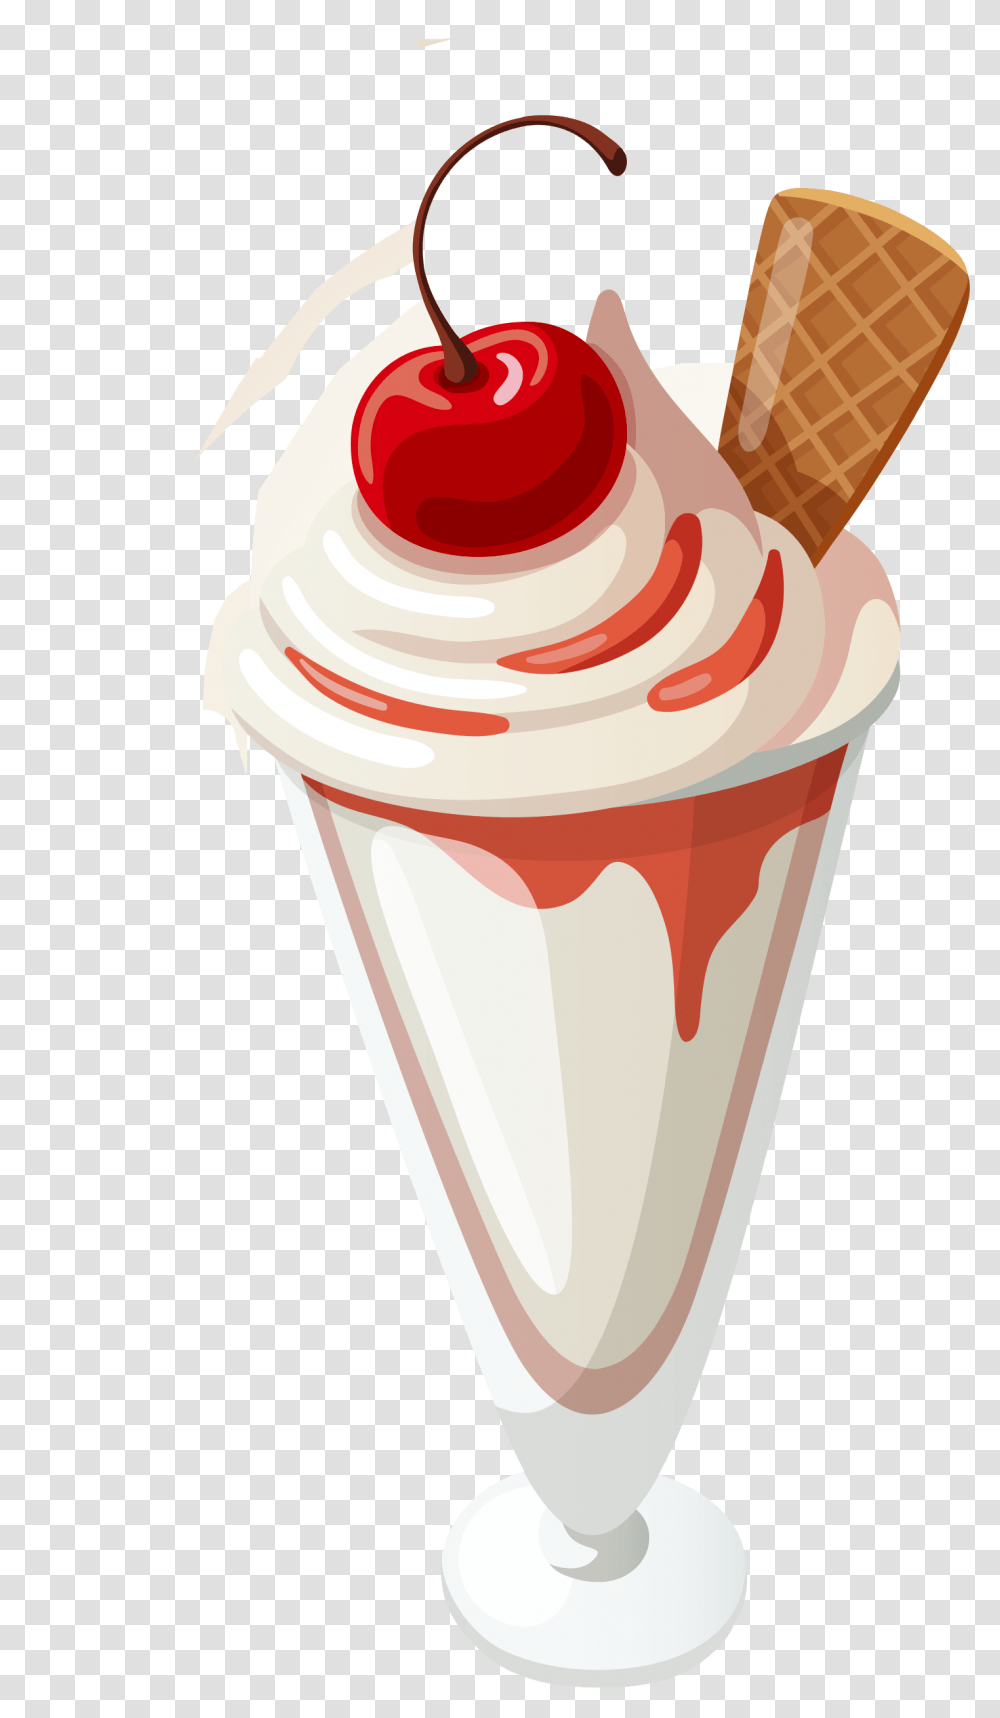 Ice Cream Cone Sundae Snow Cone Ice Cream Sundae Clipart, Dessert, Food, Creme, Birthday Cake Transparent Png